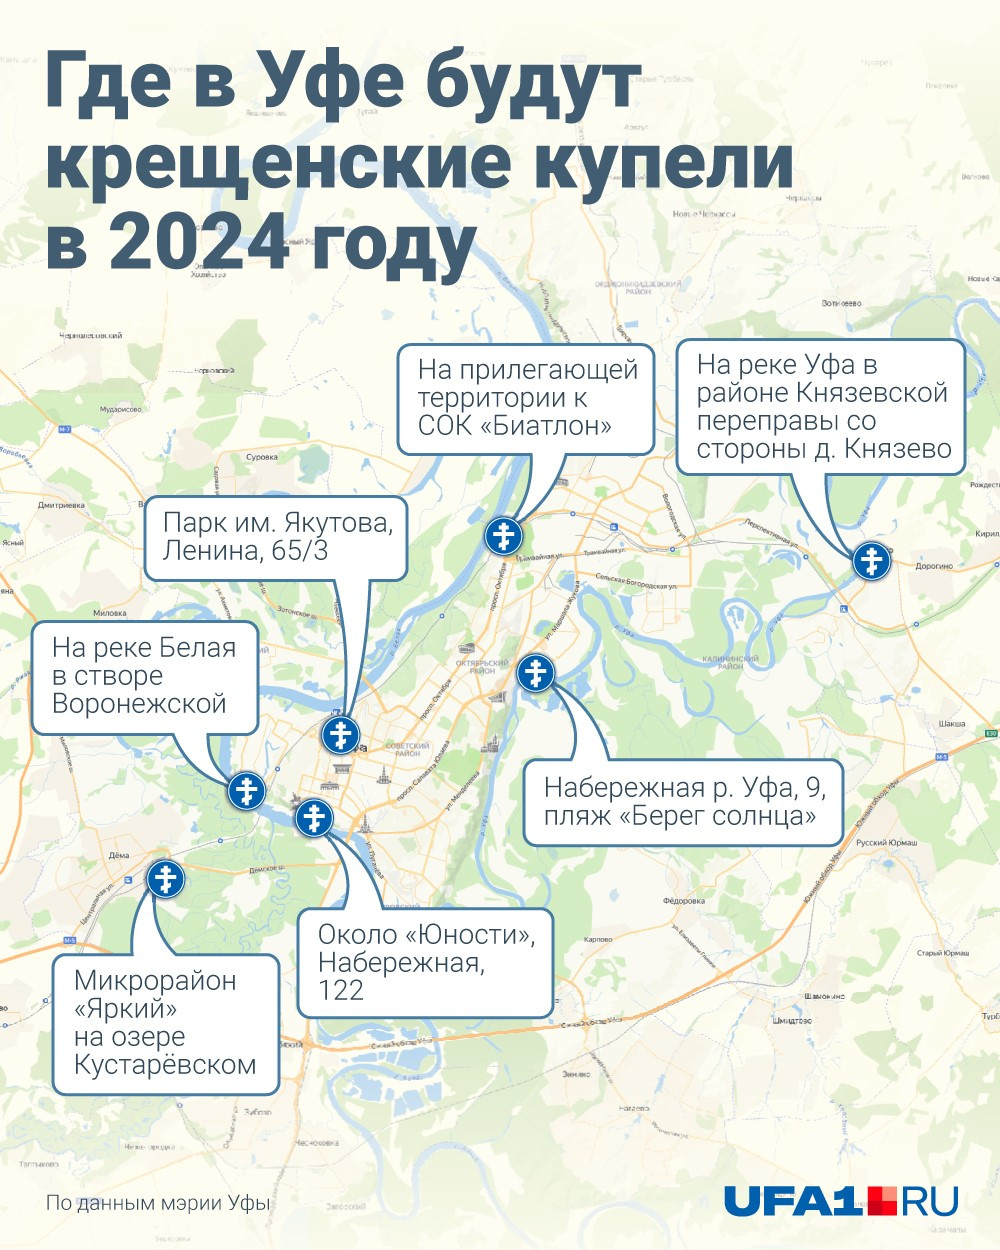 Прогноз на май 2024 уфа. Уфа это где. Купель инфографика. Где окунуться на крещение в Москве 2021 на карте. Крещение инфографика.